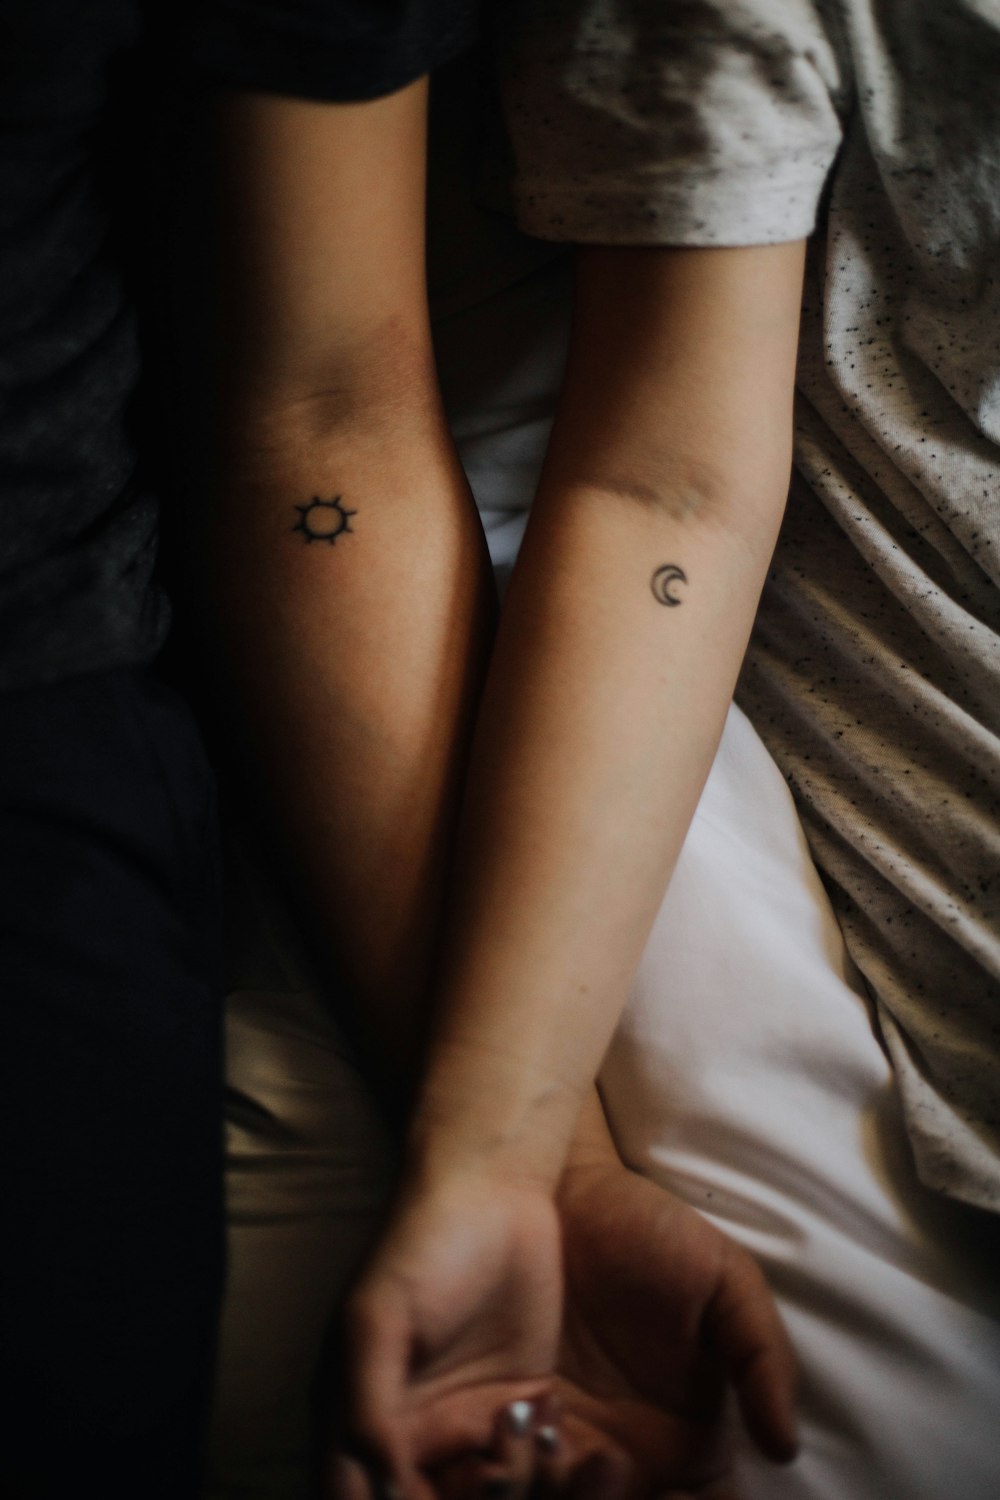 due persone che mostrano i loro tatuaggi a mano